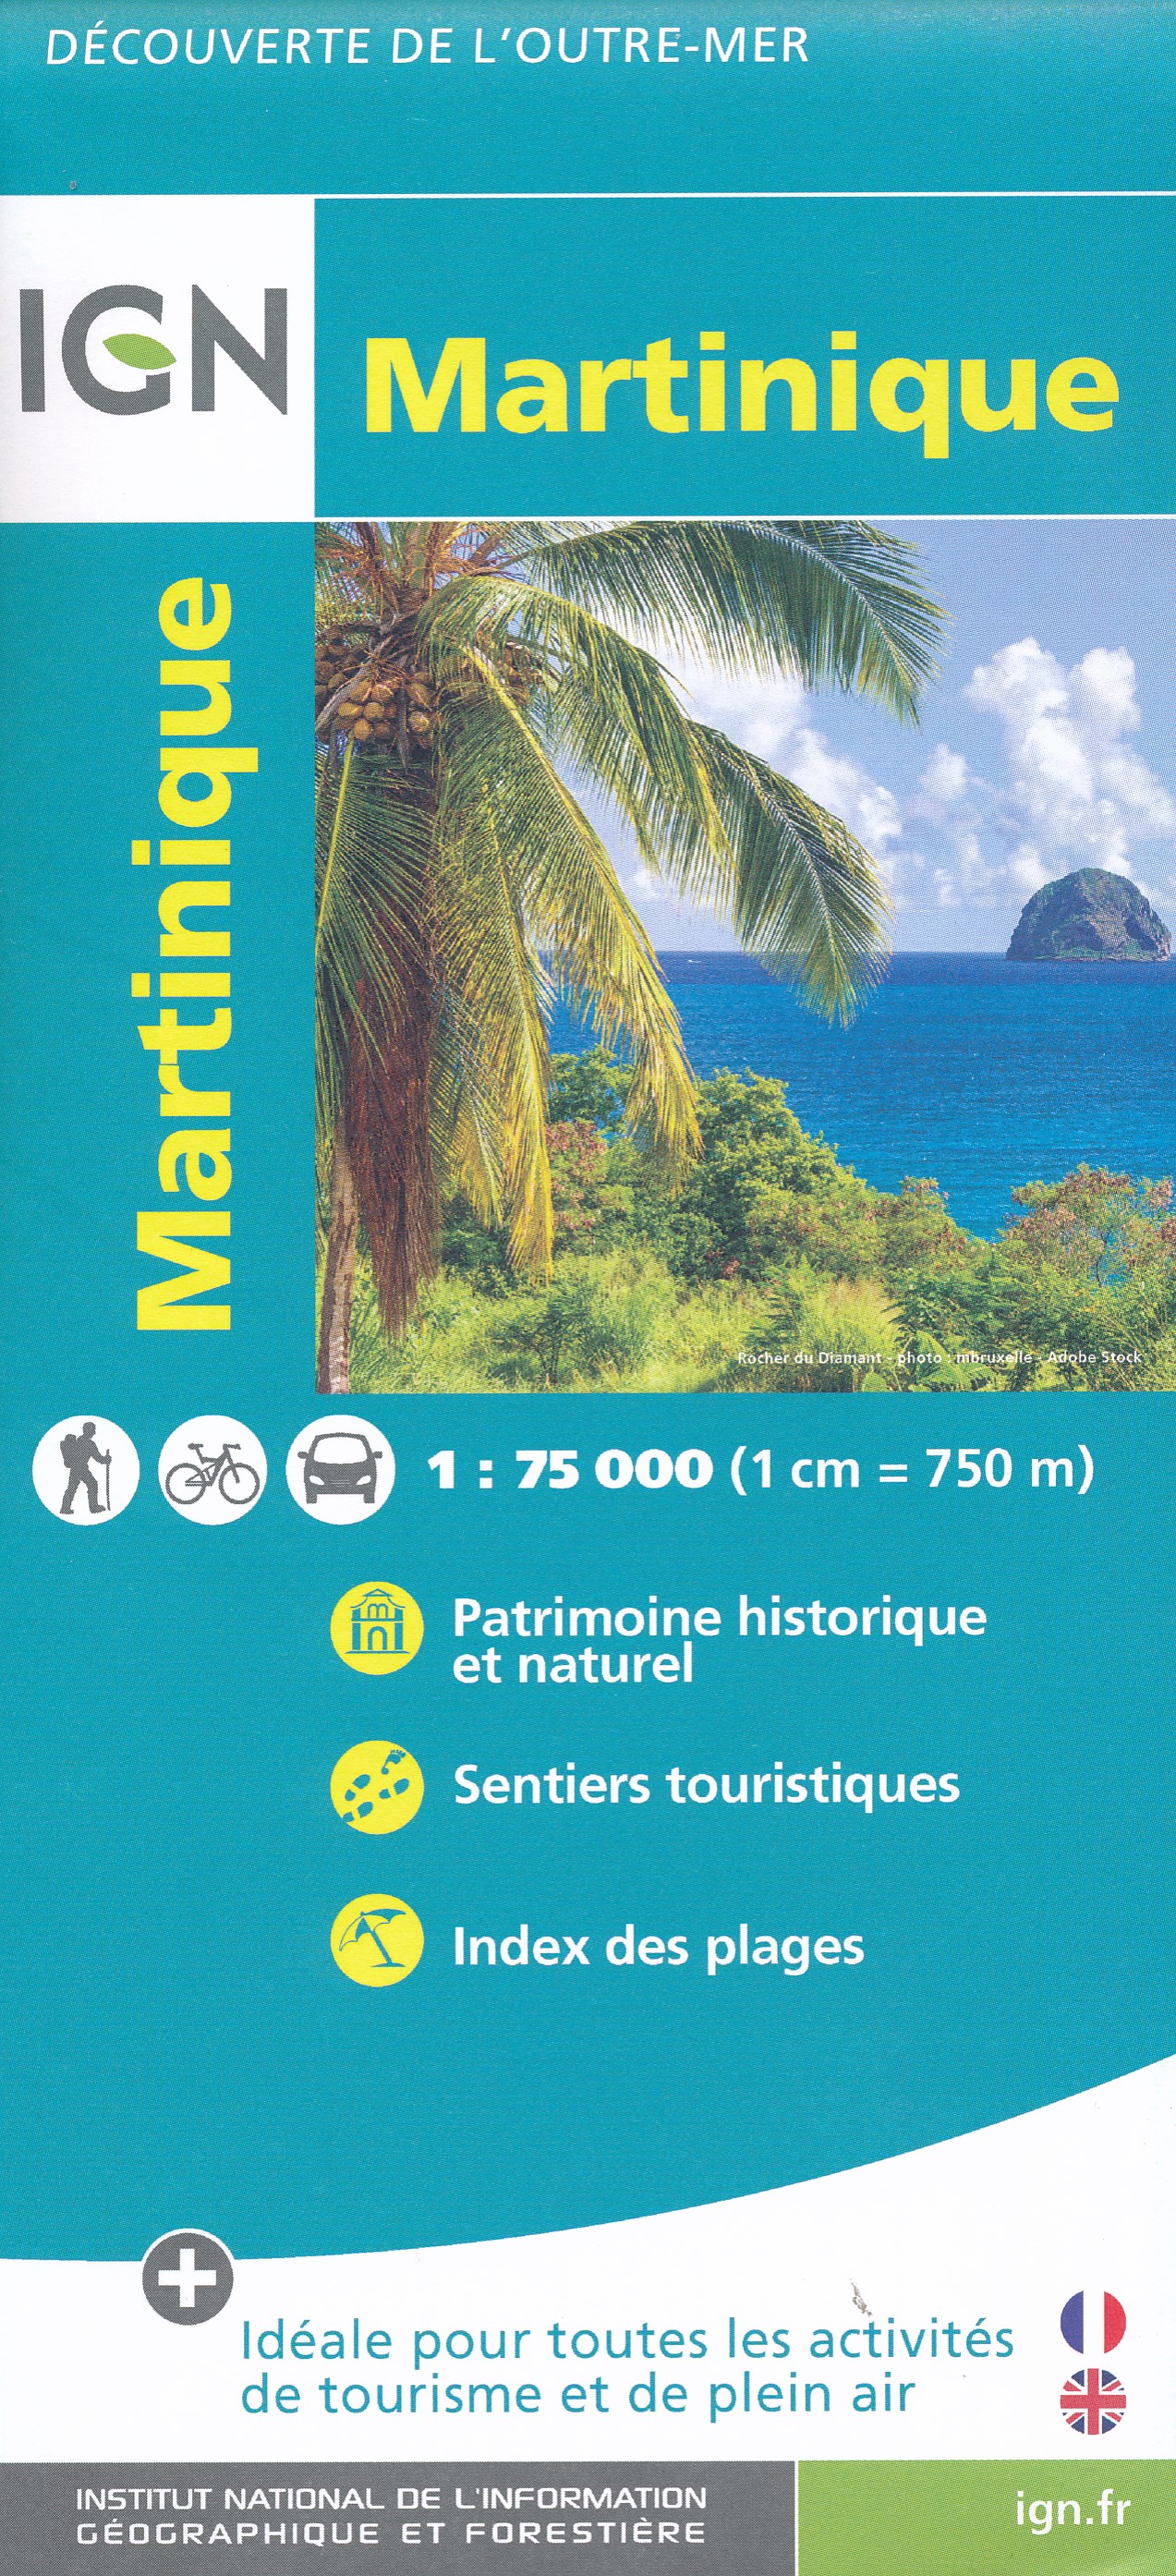 Online bestellen: Wandelkaart - Fietskaart Martinique | IGN - Institut Géographique National